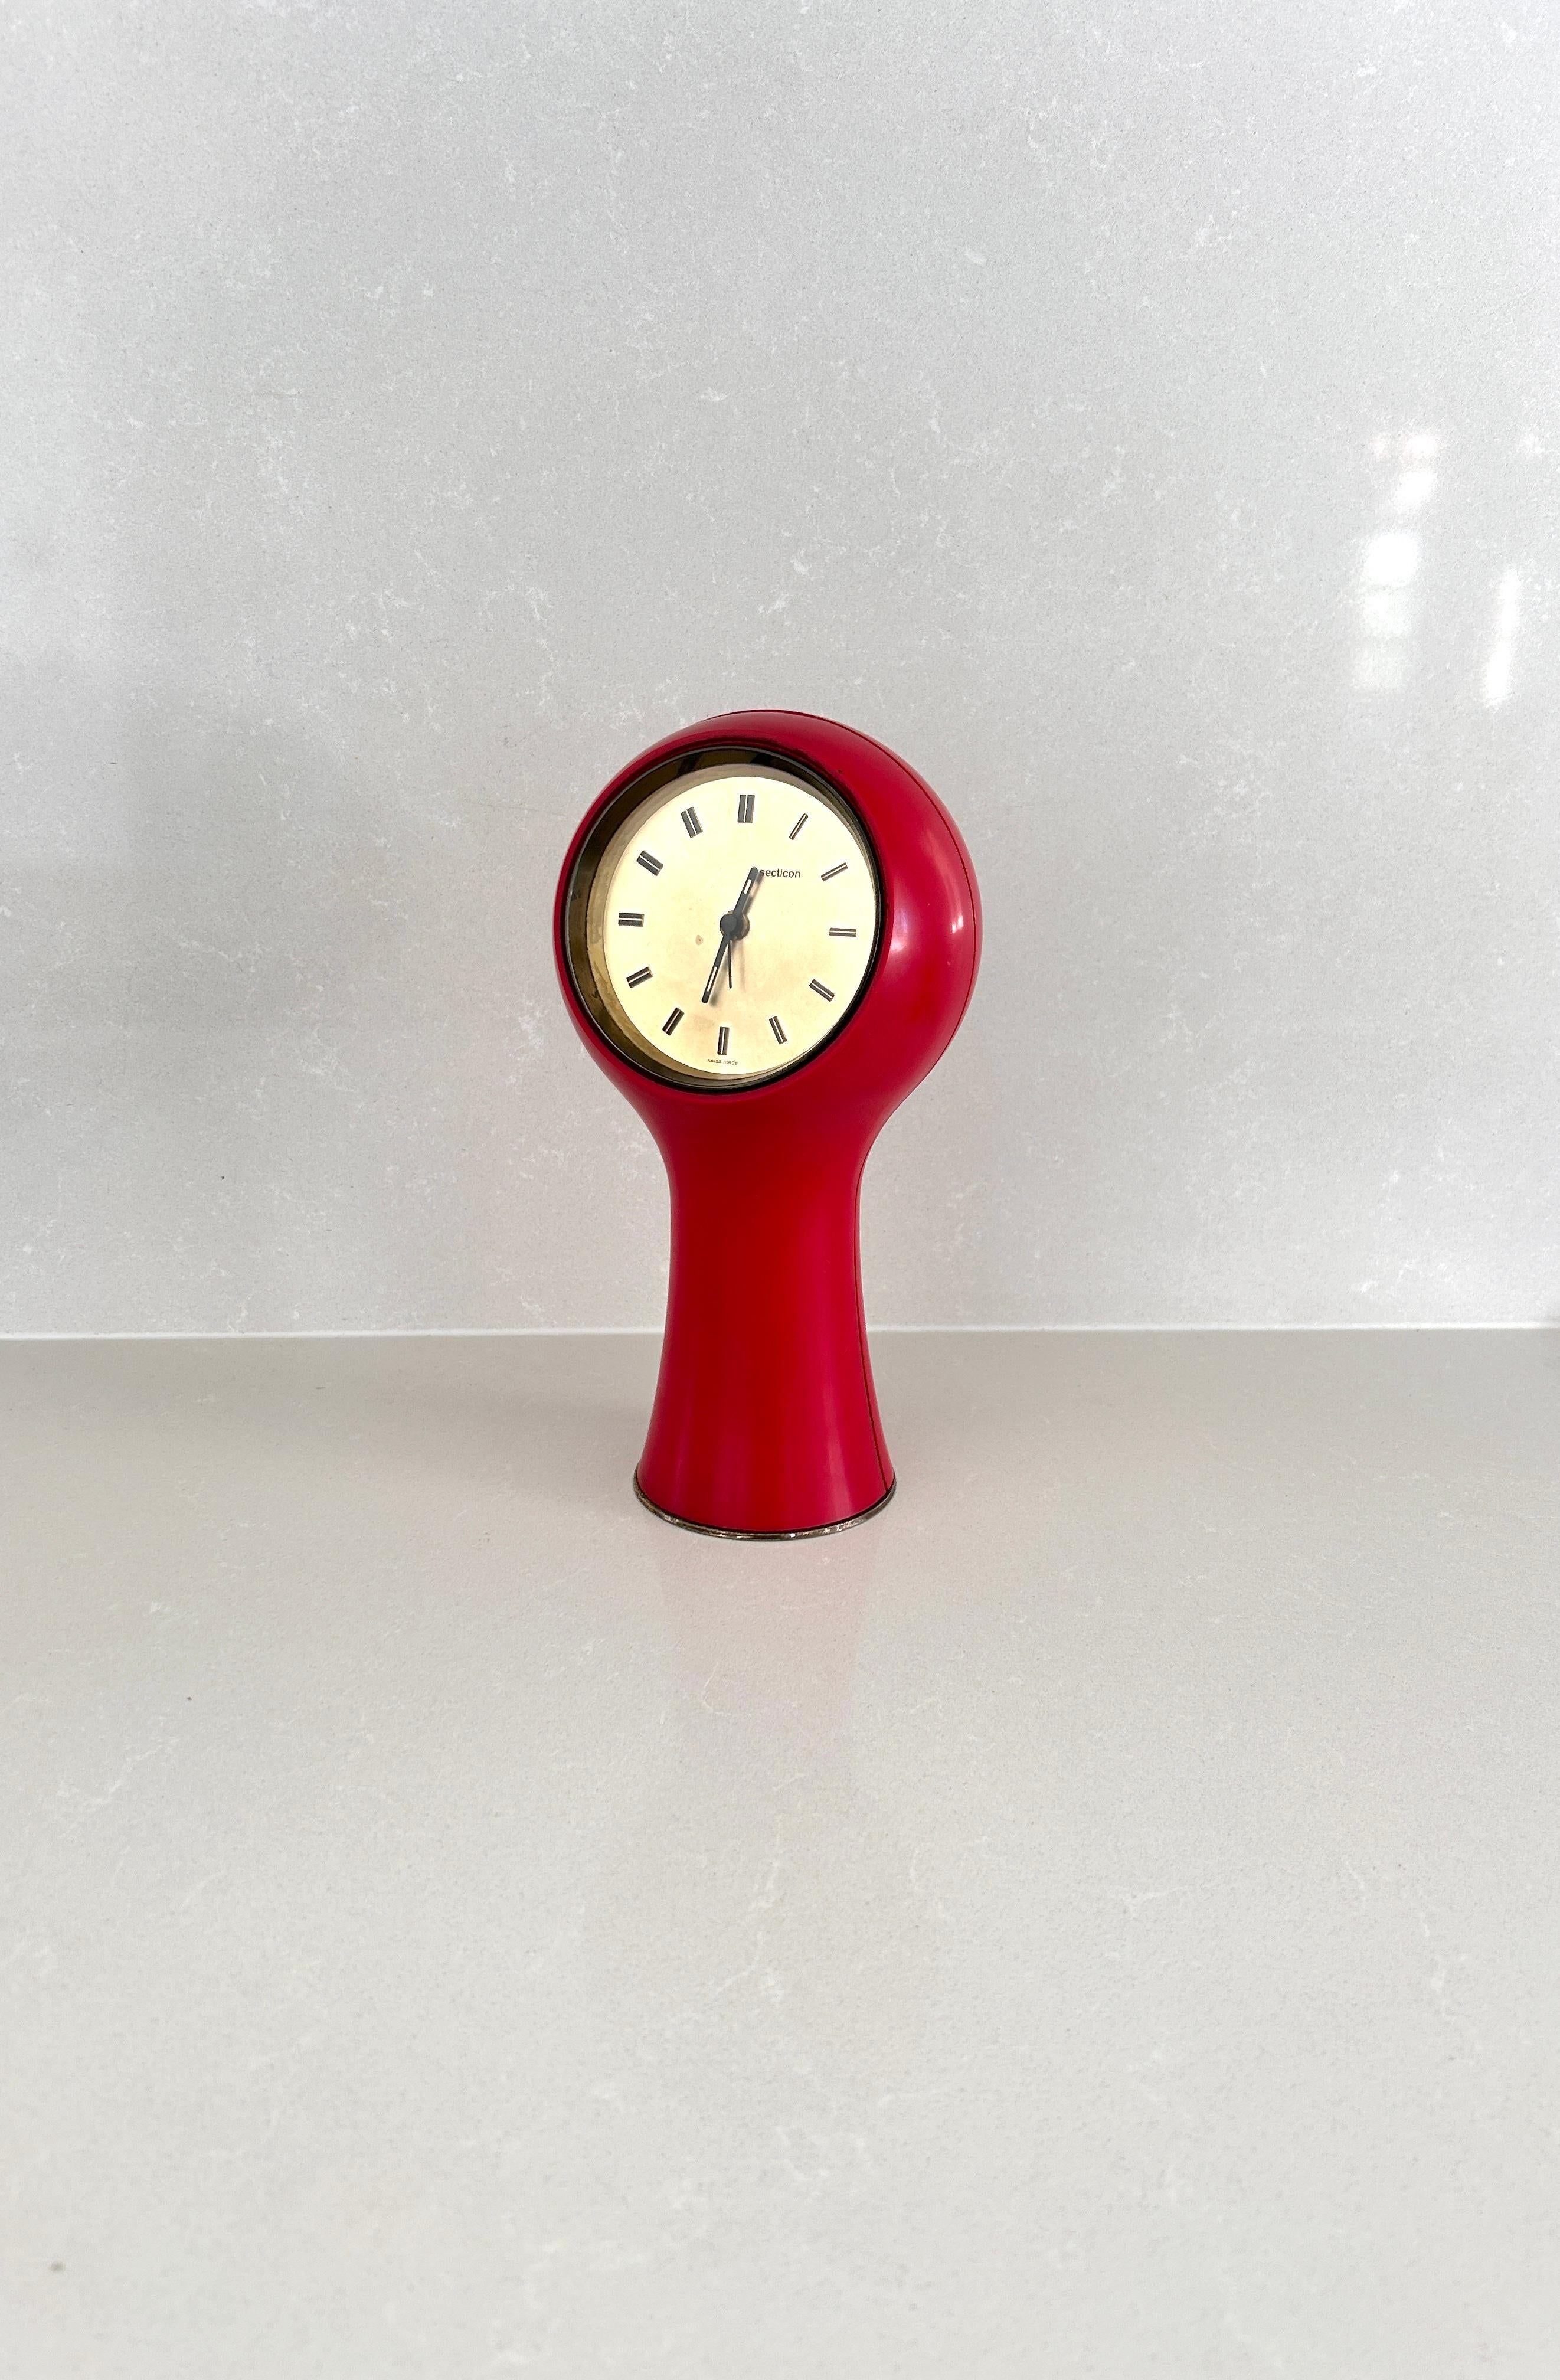 Orologio da tavolo disegnato da Angelo Mangiarotti e Bruno Morassutti nel 1956 per l’azienda svizzera Le Porte-Echappement Universel.

Struttura in plastica rossa, movimento a batteria.
